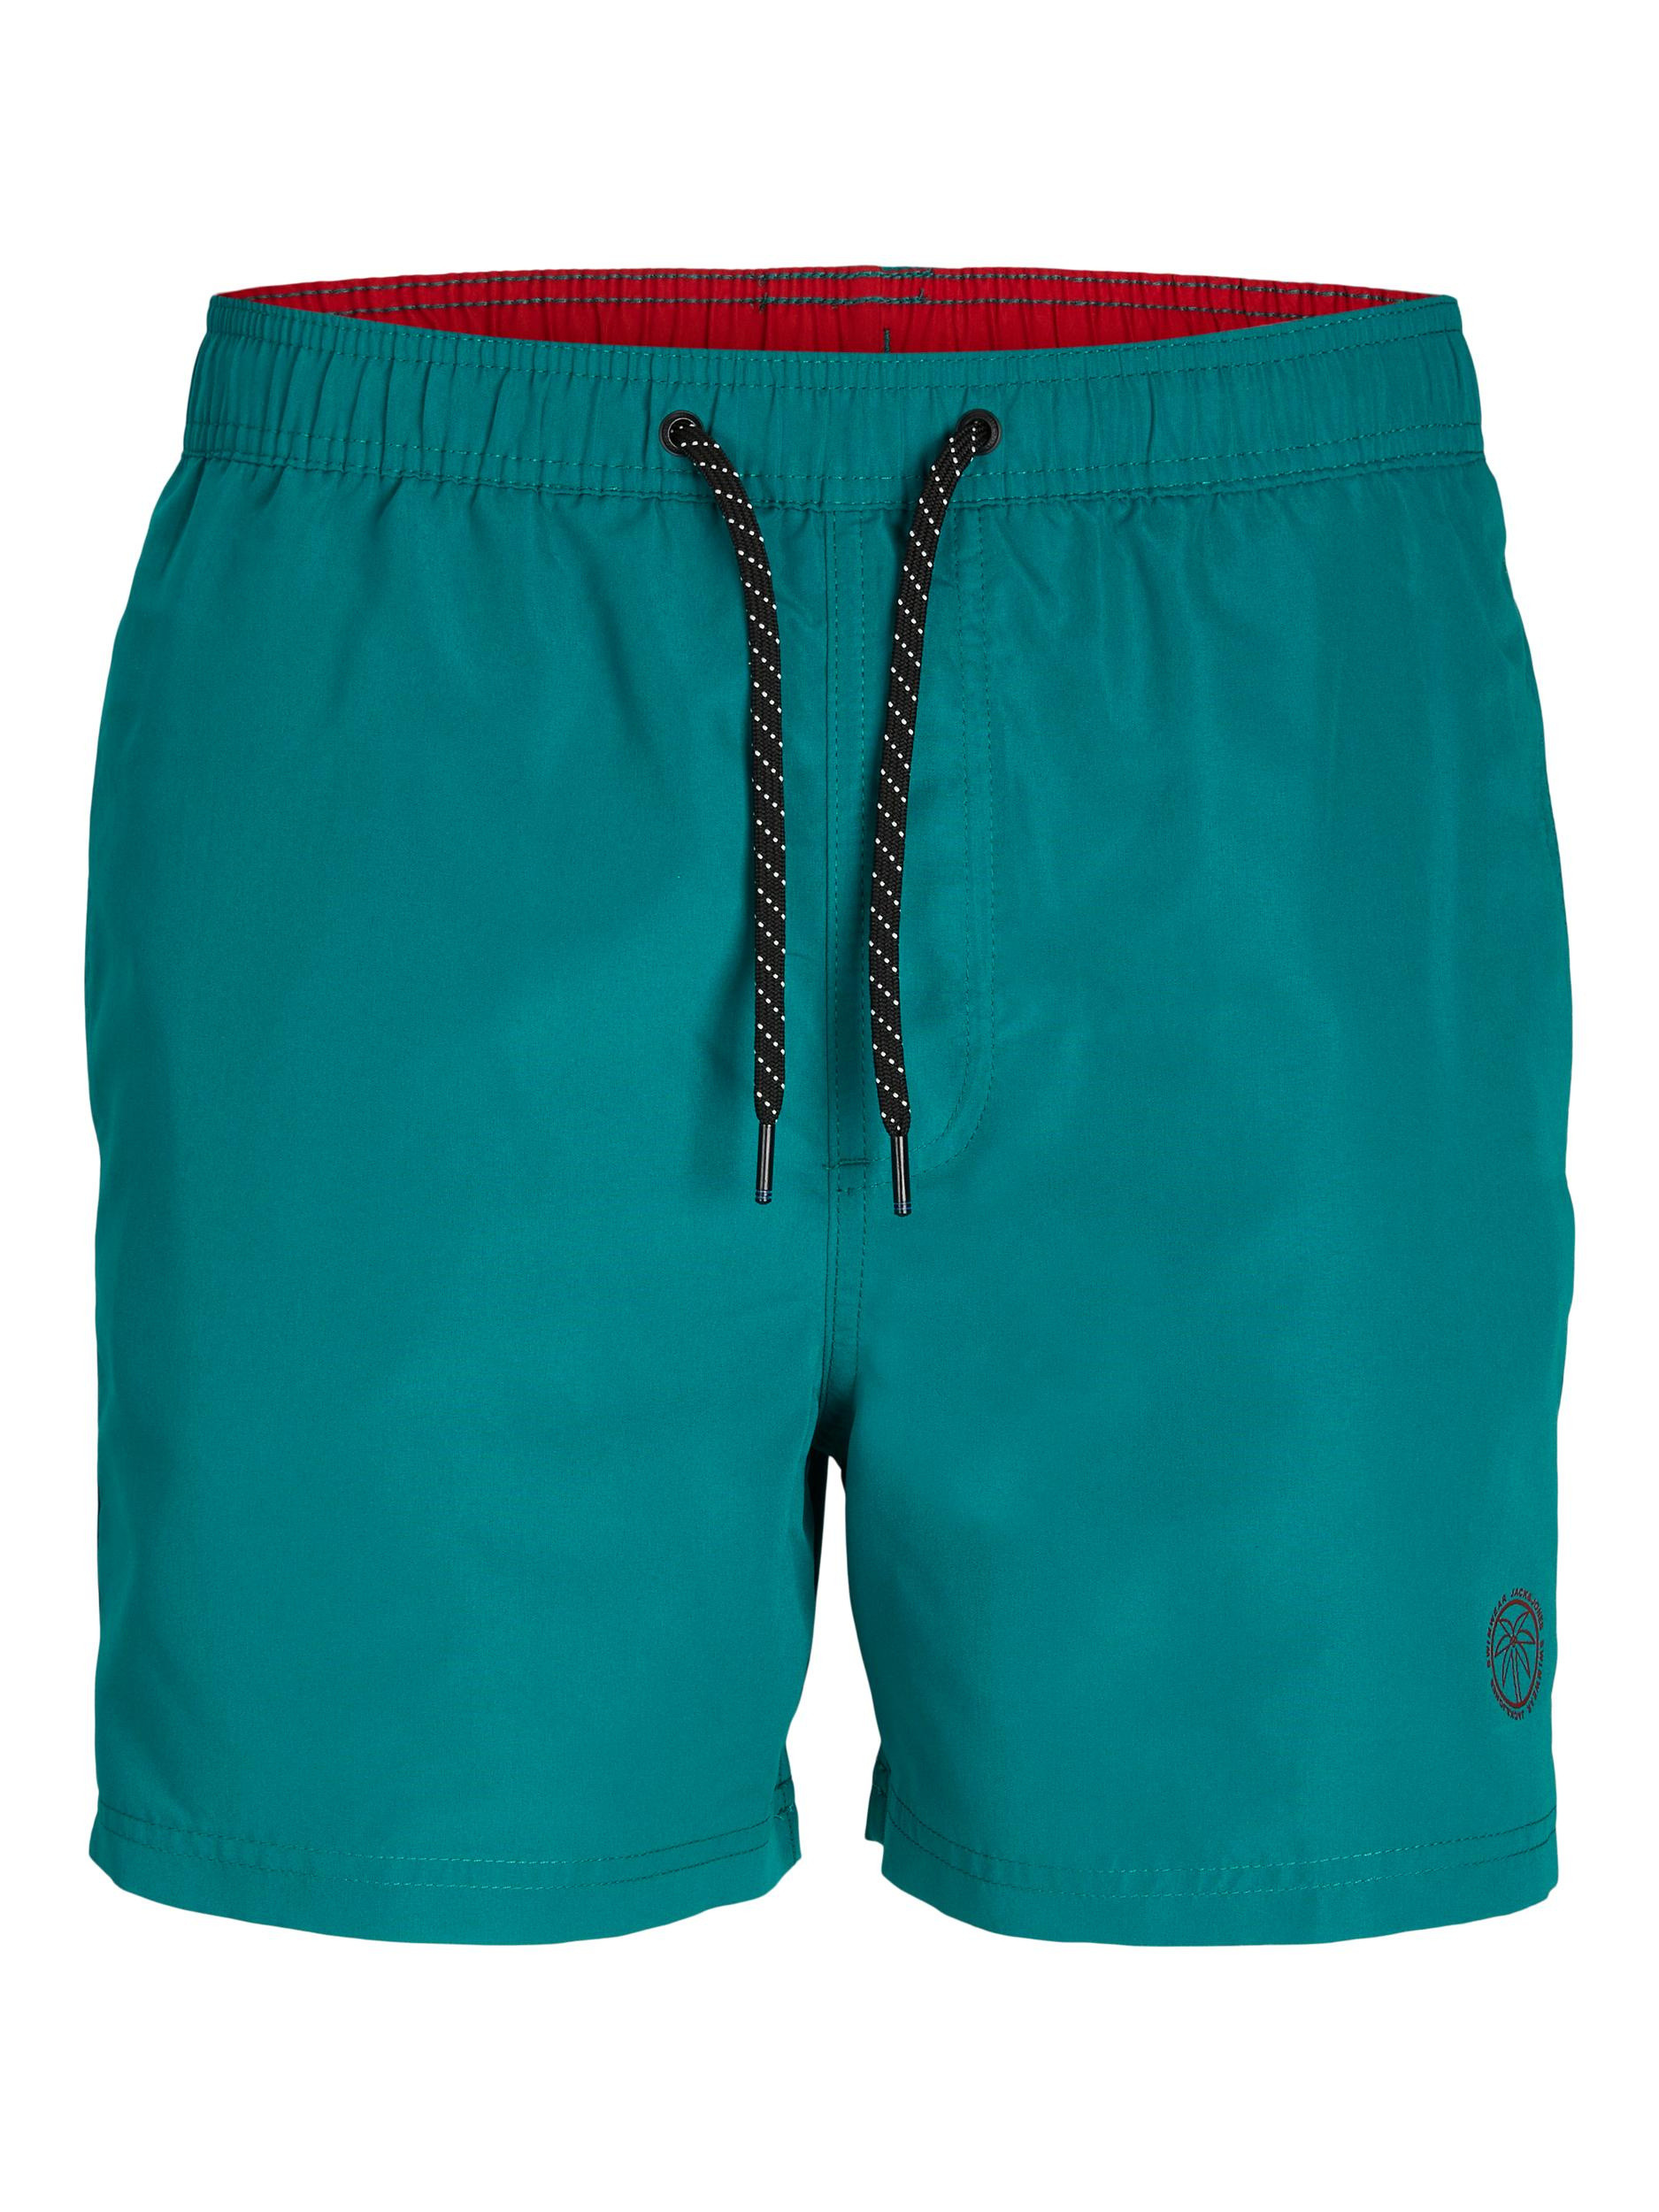 Jack & Jones - Regular fit swim trunks, Green, large image number 0